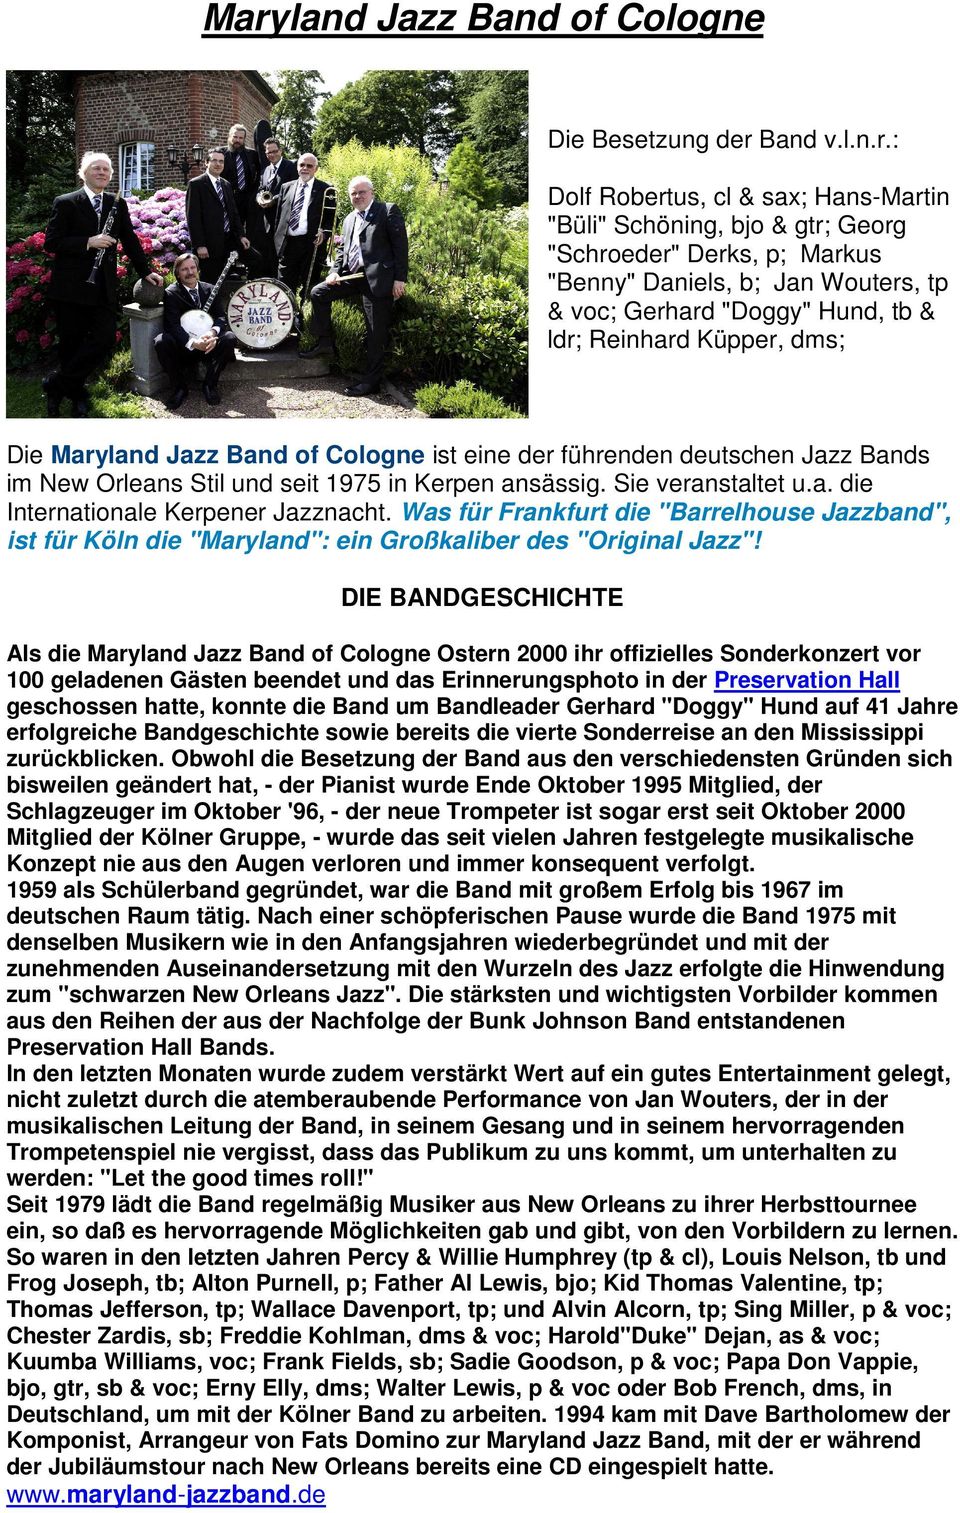 Sie veranstaltet u.a. die Internationale Kerpener Jazznacht. Was für Frankfurt die "Barrelhouse Jazzband", ist für Köln die "Maryland": ein Großkaliber des "Original Jazz"!